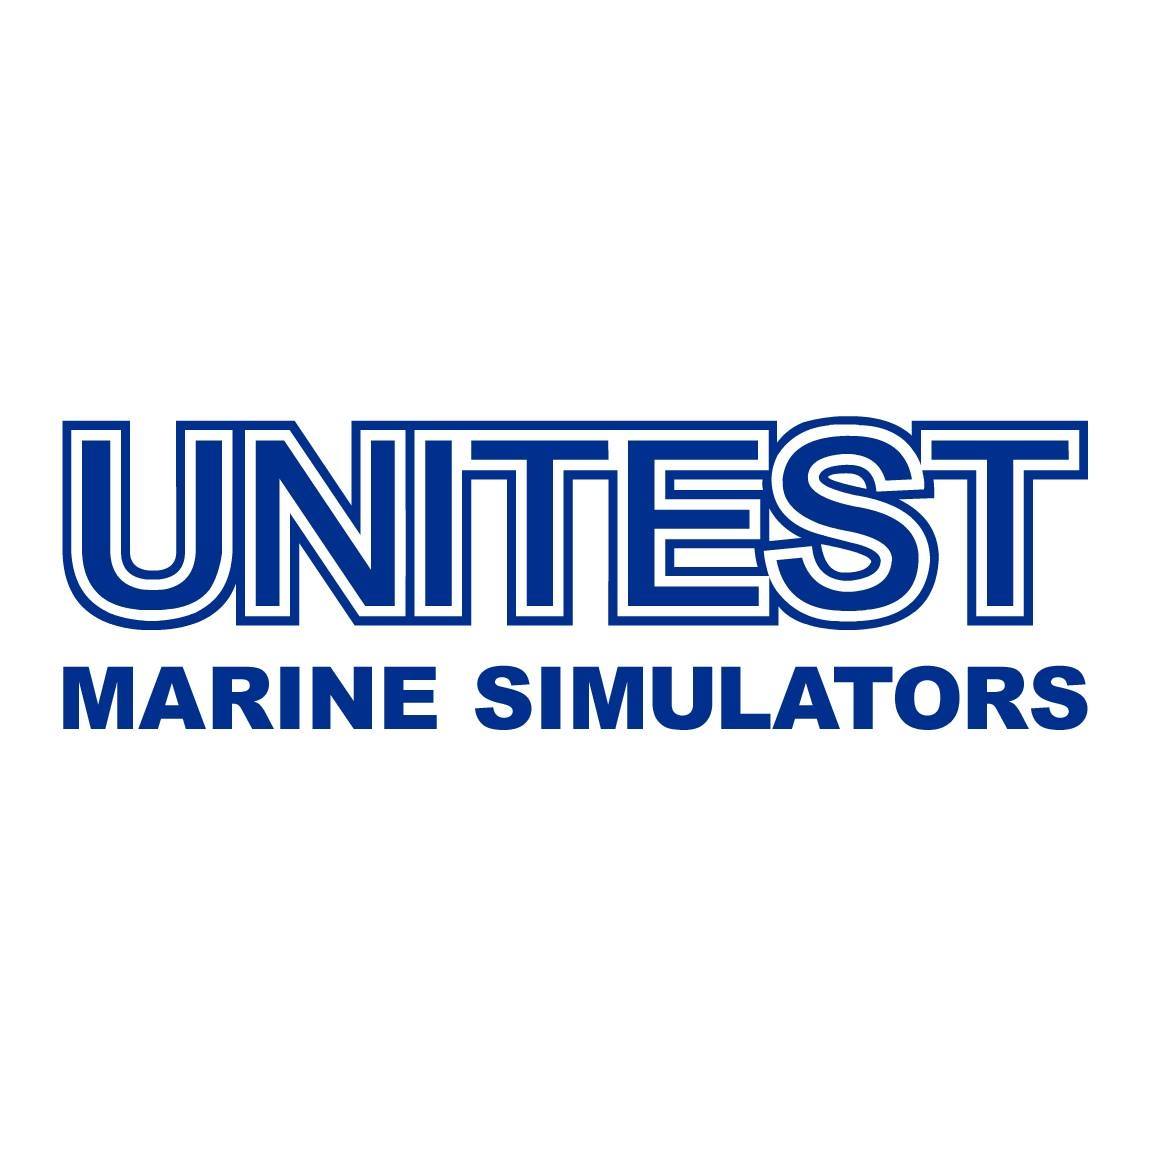 Unitest Marine Simulators Ltd